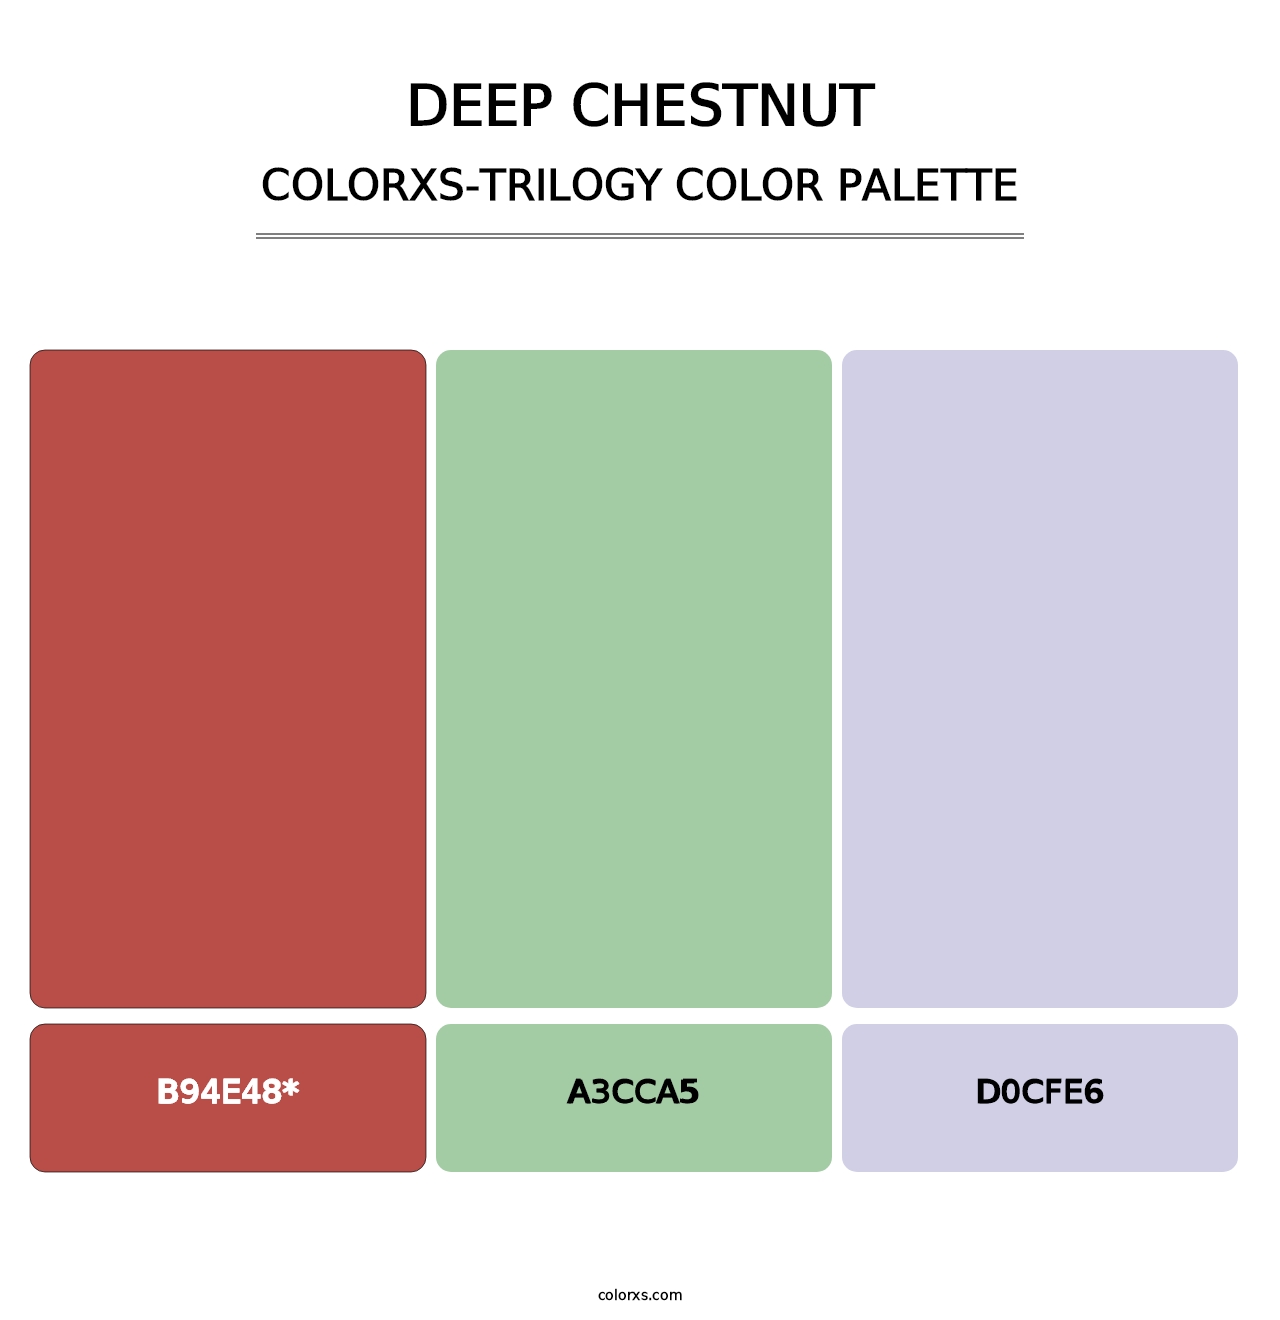 Deep Chestnut - Colorxs Trilogy Palette